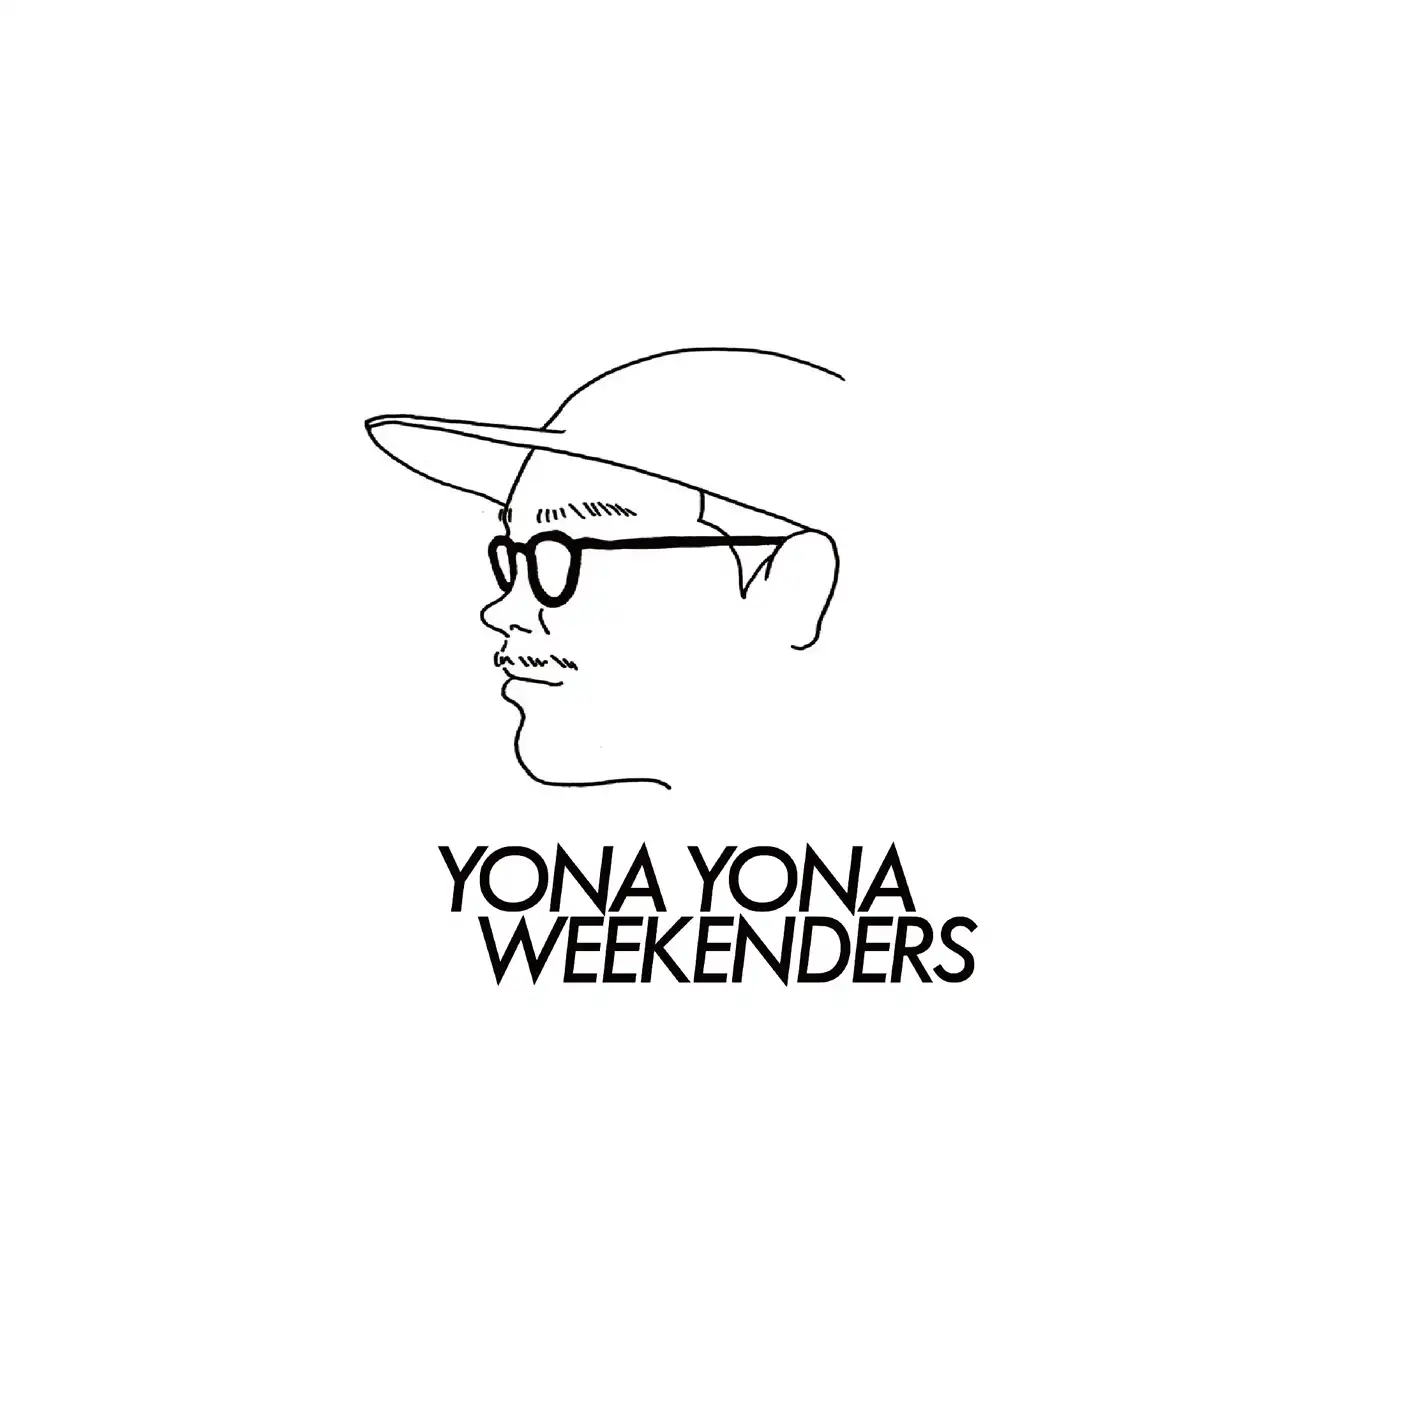 YONA YONA WEEKENDERS 誰もいないsea アナログレコード - 邦楽